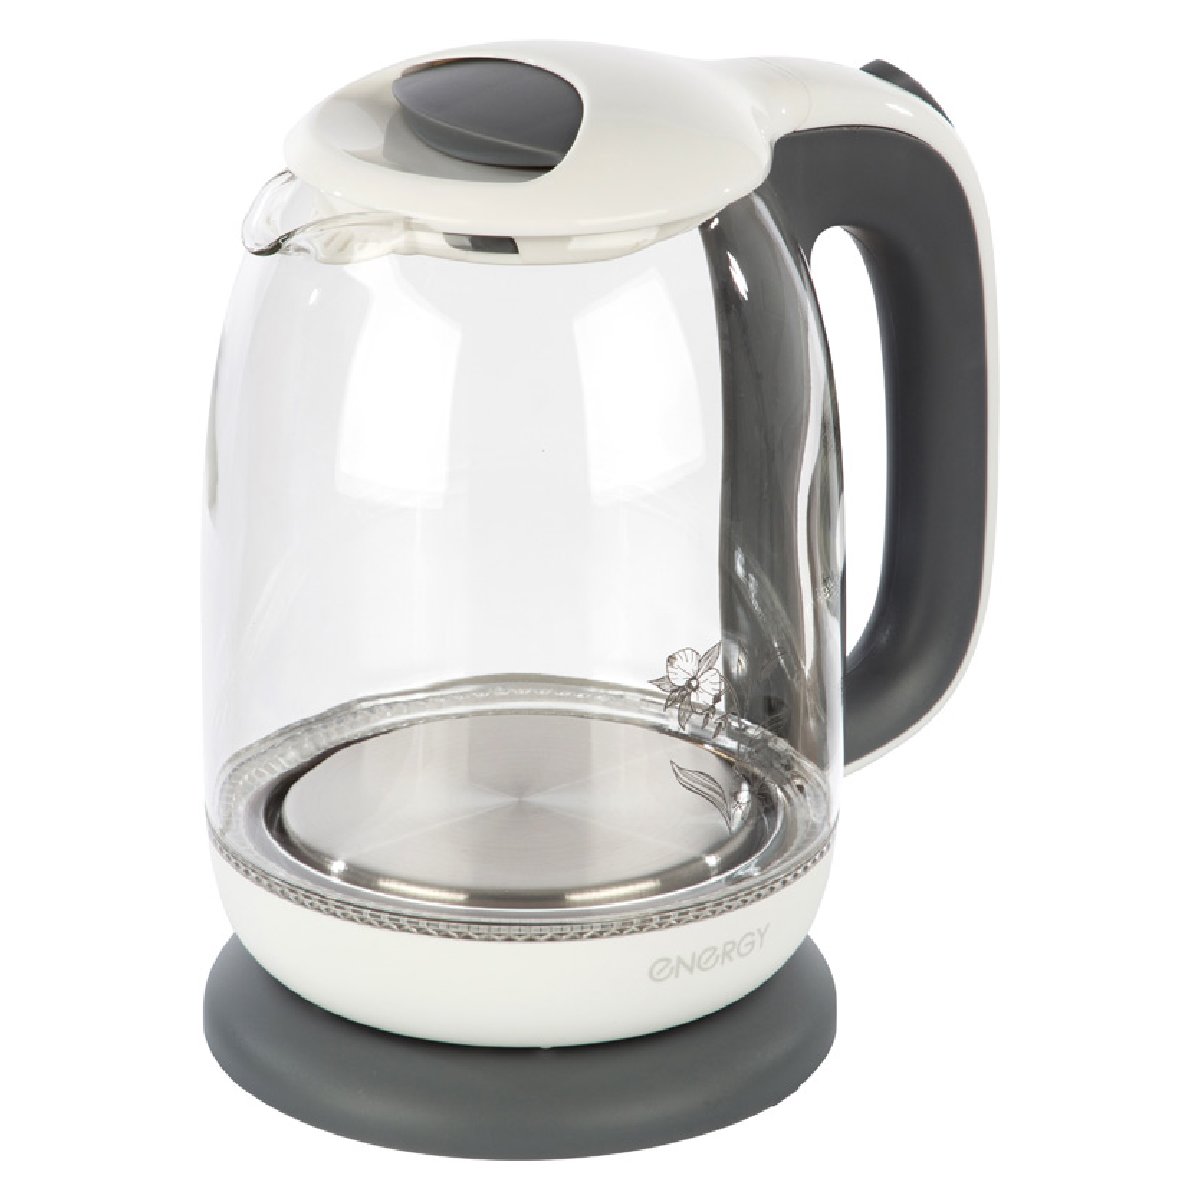 Energy E-281 чайник электрический дисковый, 1.7л, 2200Вт, стеклянный, бело-серый (005210)Купить